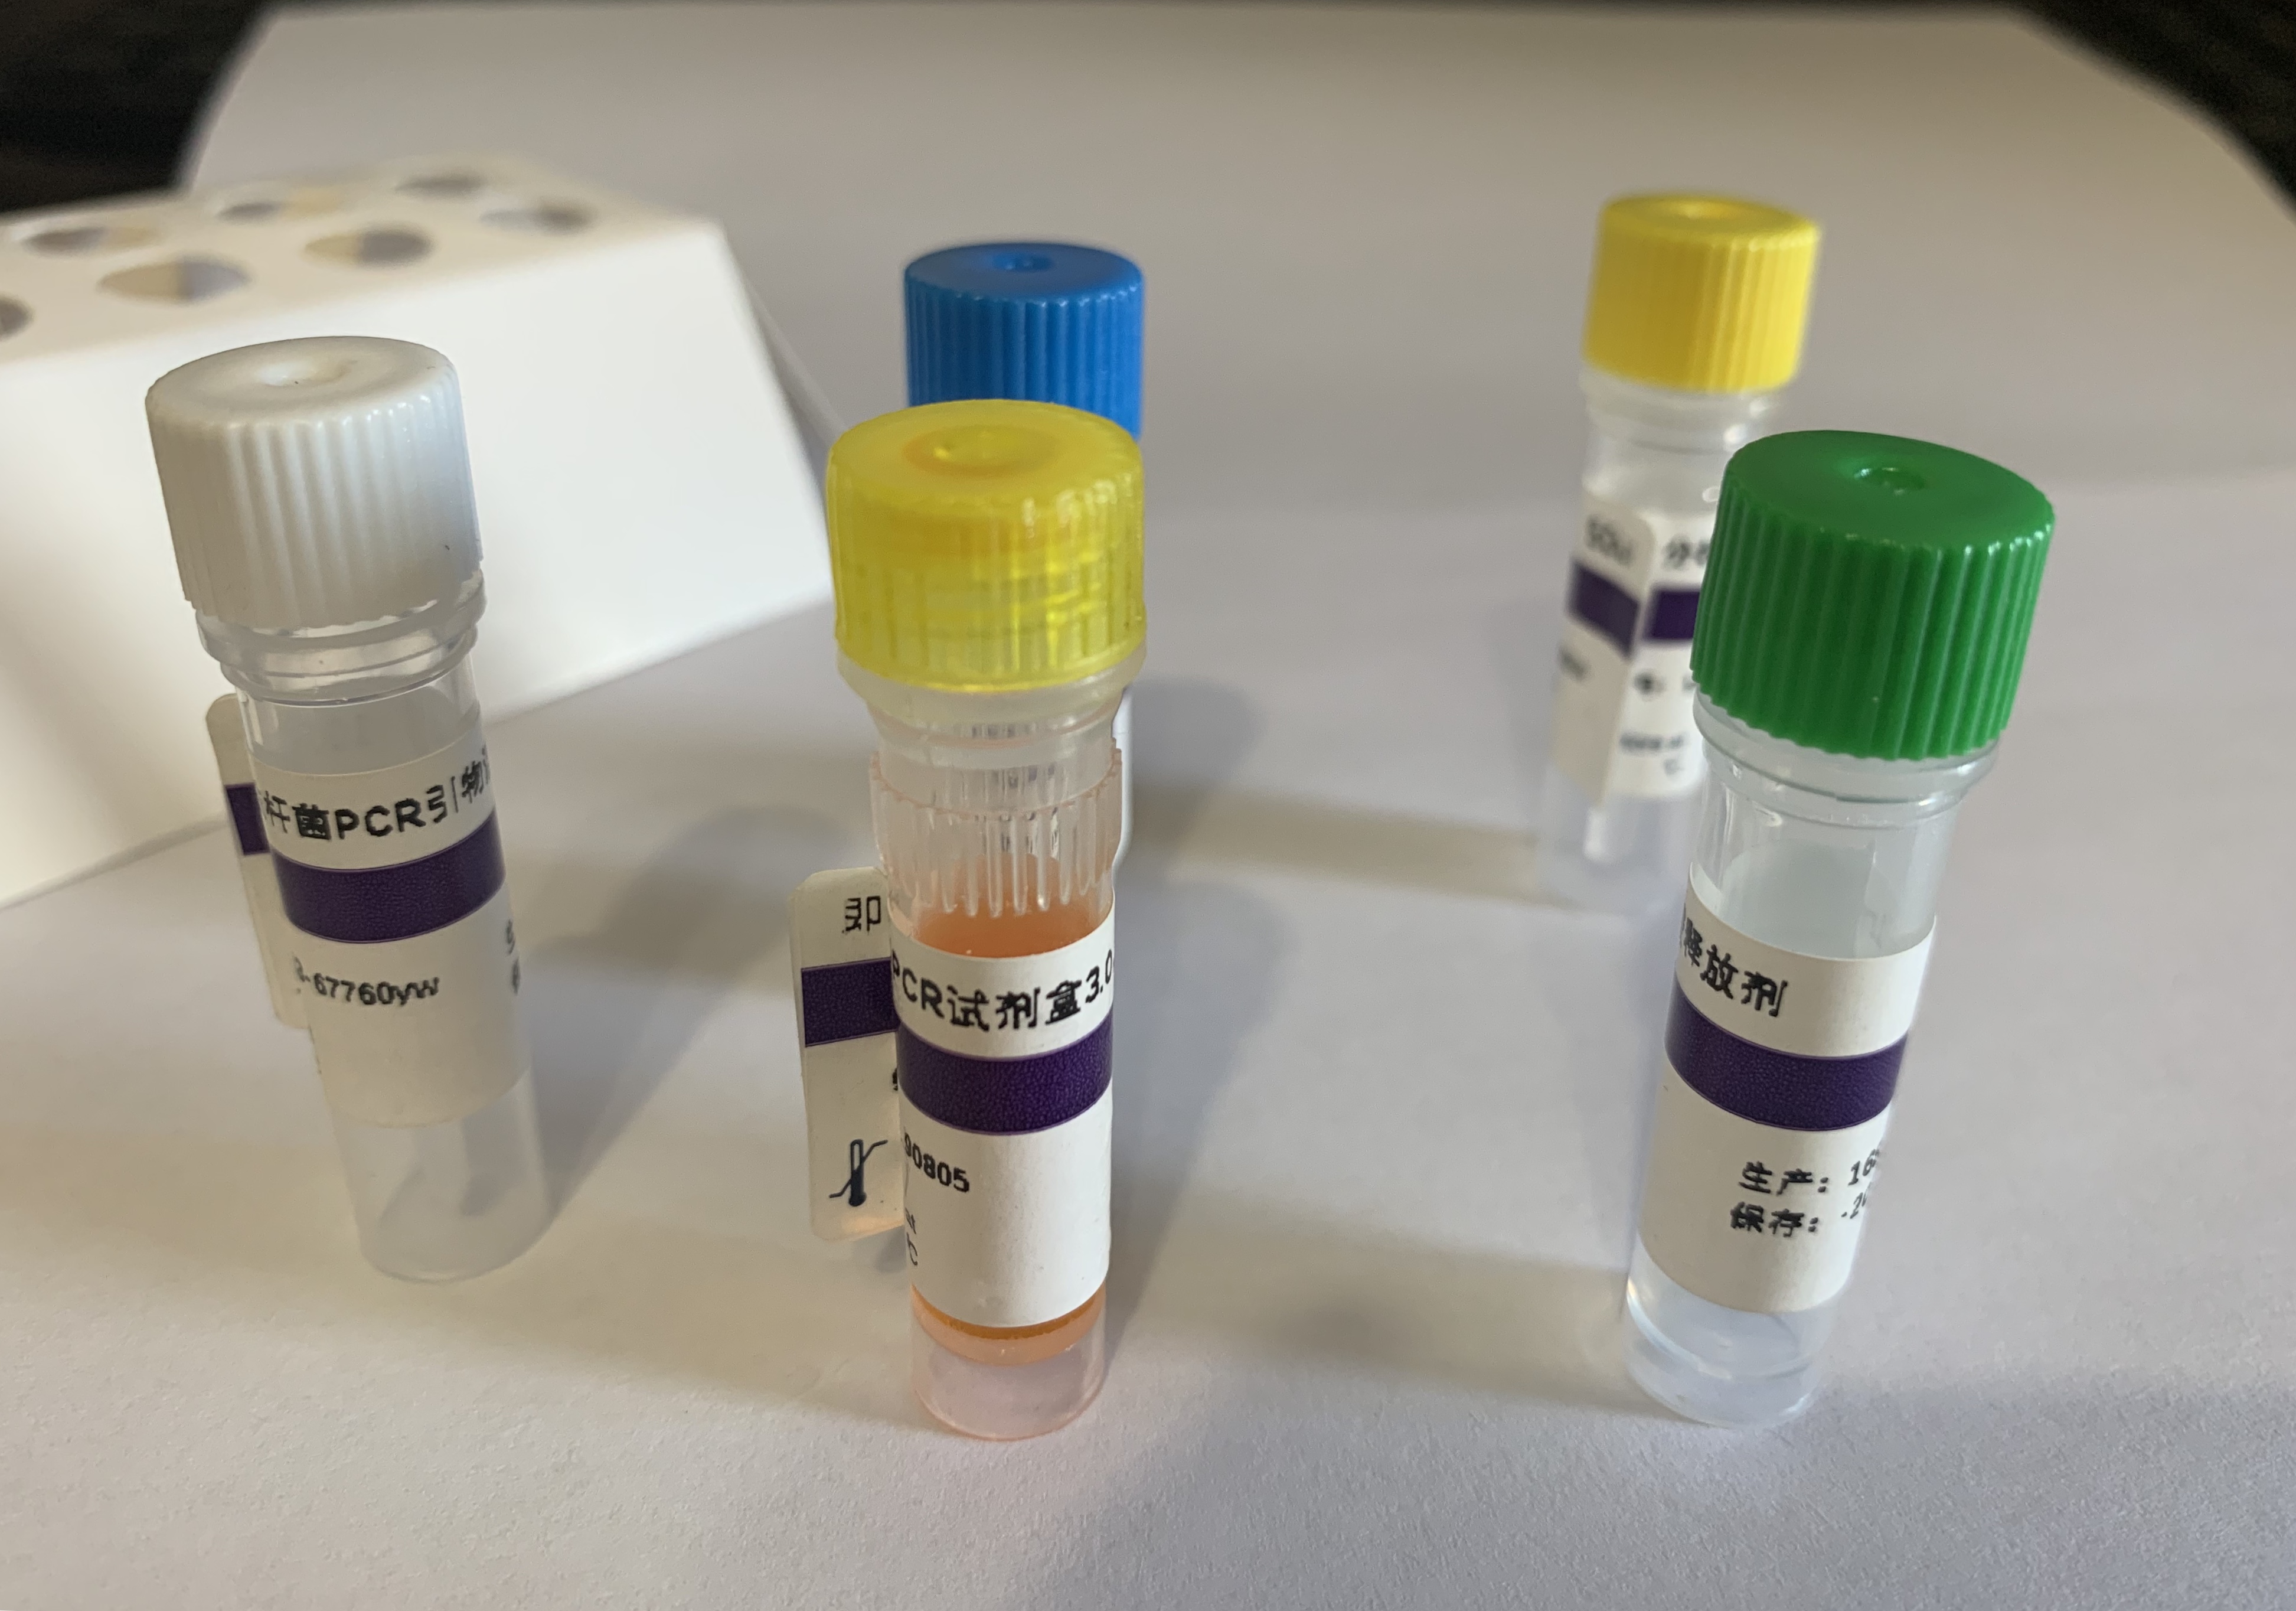 粪肠球菌探针法荧光定量PCR试剂盒